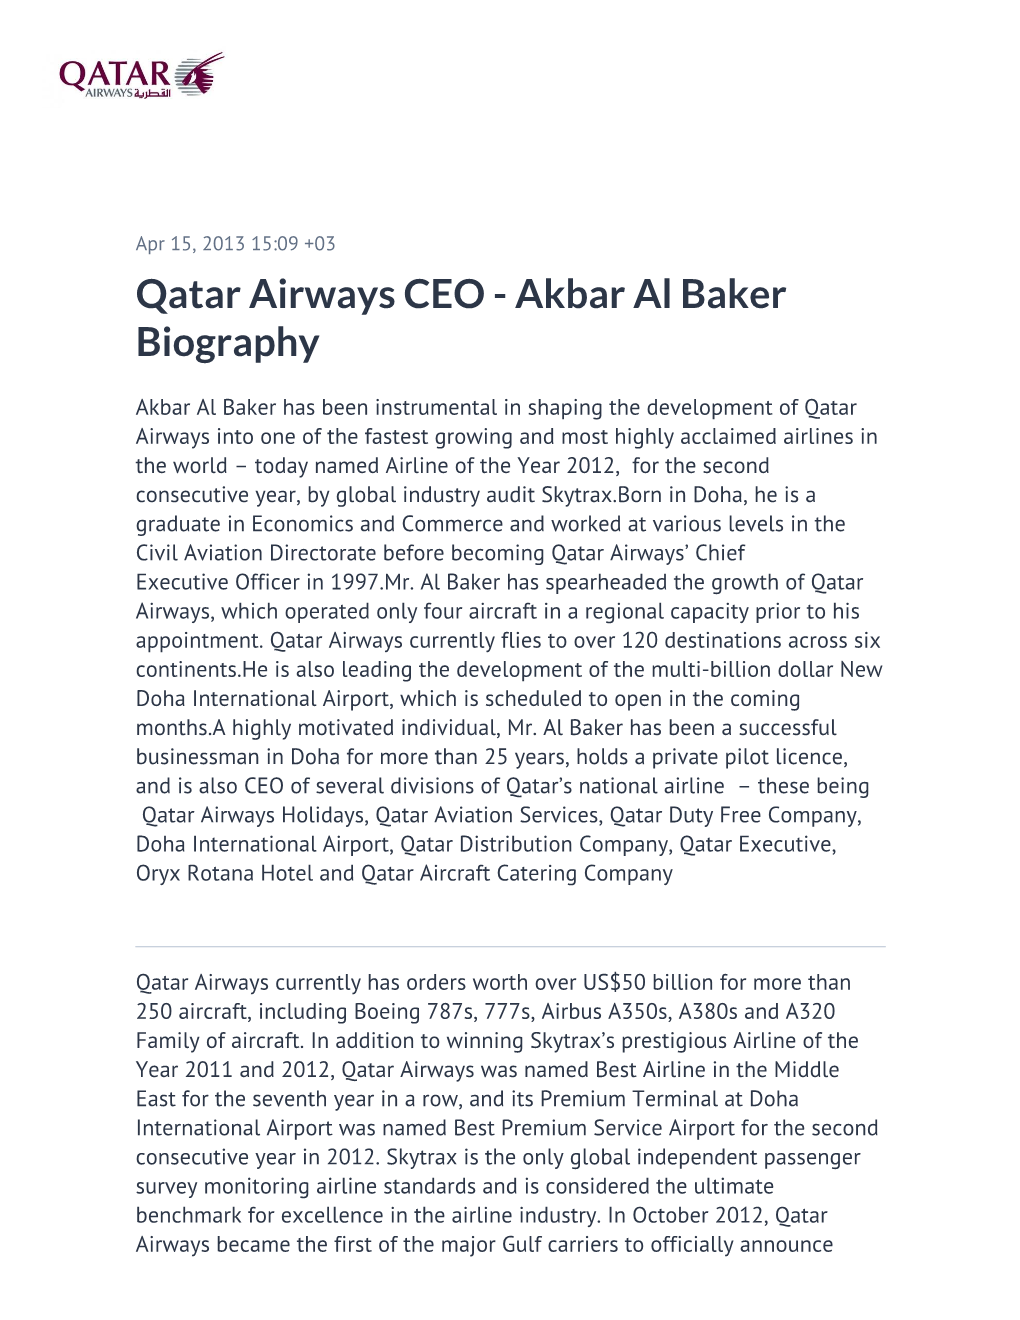 Qatar Airways CEO - Akbar Al Baker Biography